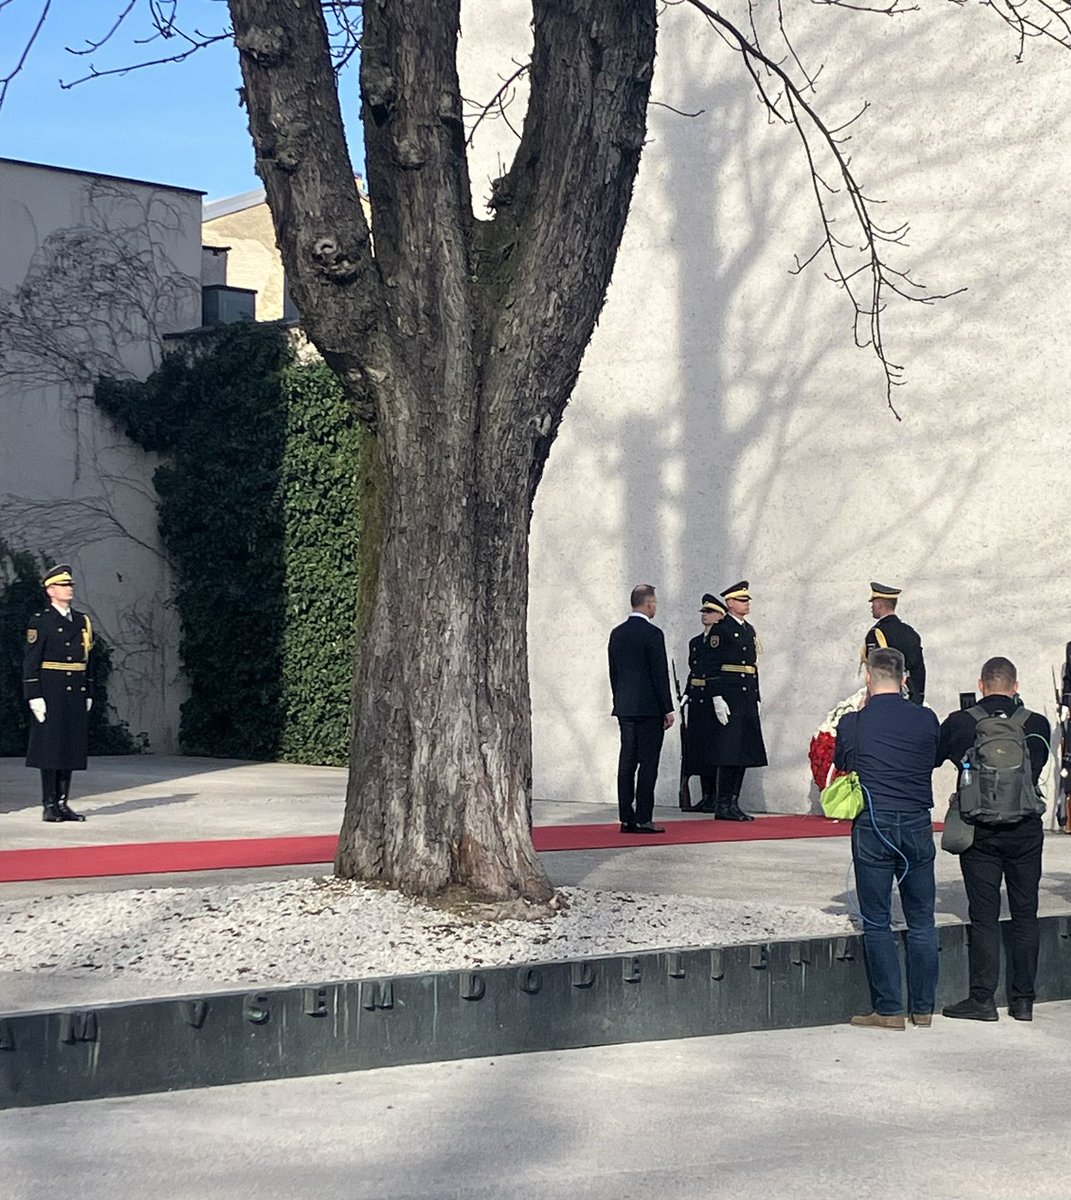 Poljski predsednik @AndrzejDuda je pravkar položil venec k Spomeniku sprave na #Kongresnitrg v Ljubljani. Kako zelo pomembni so takšni rituali - toliko spominjanja vrinejo v misli in razpnejo čas iz trenutnosti v večnost.